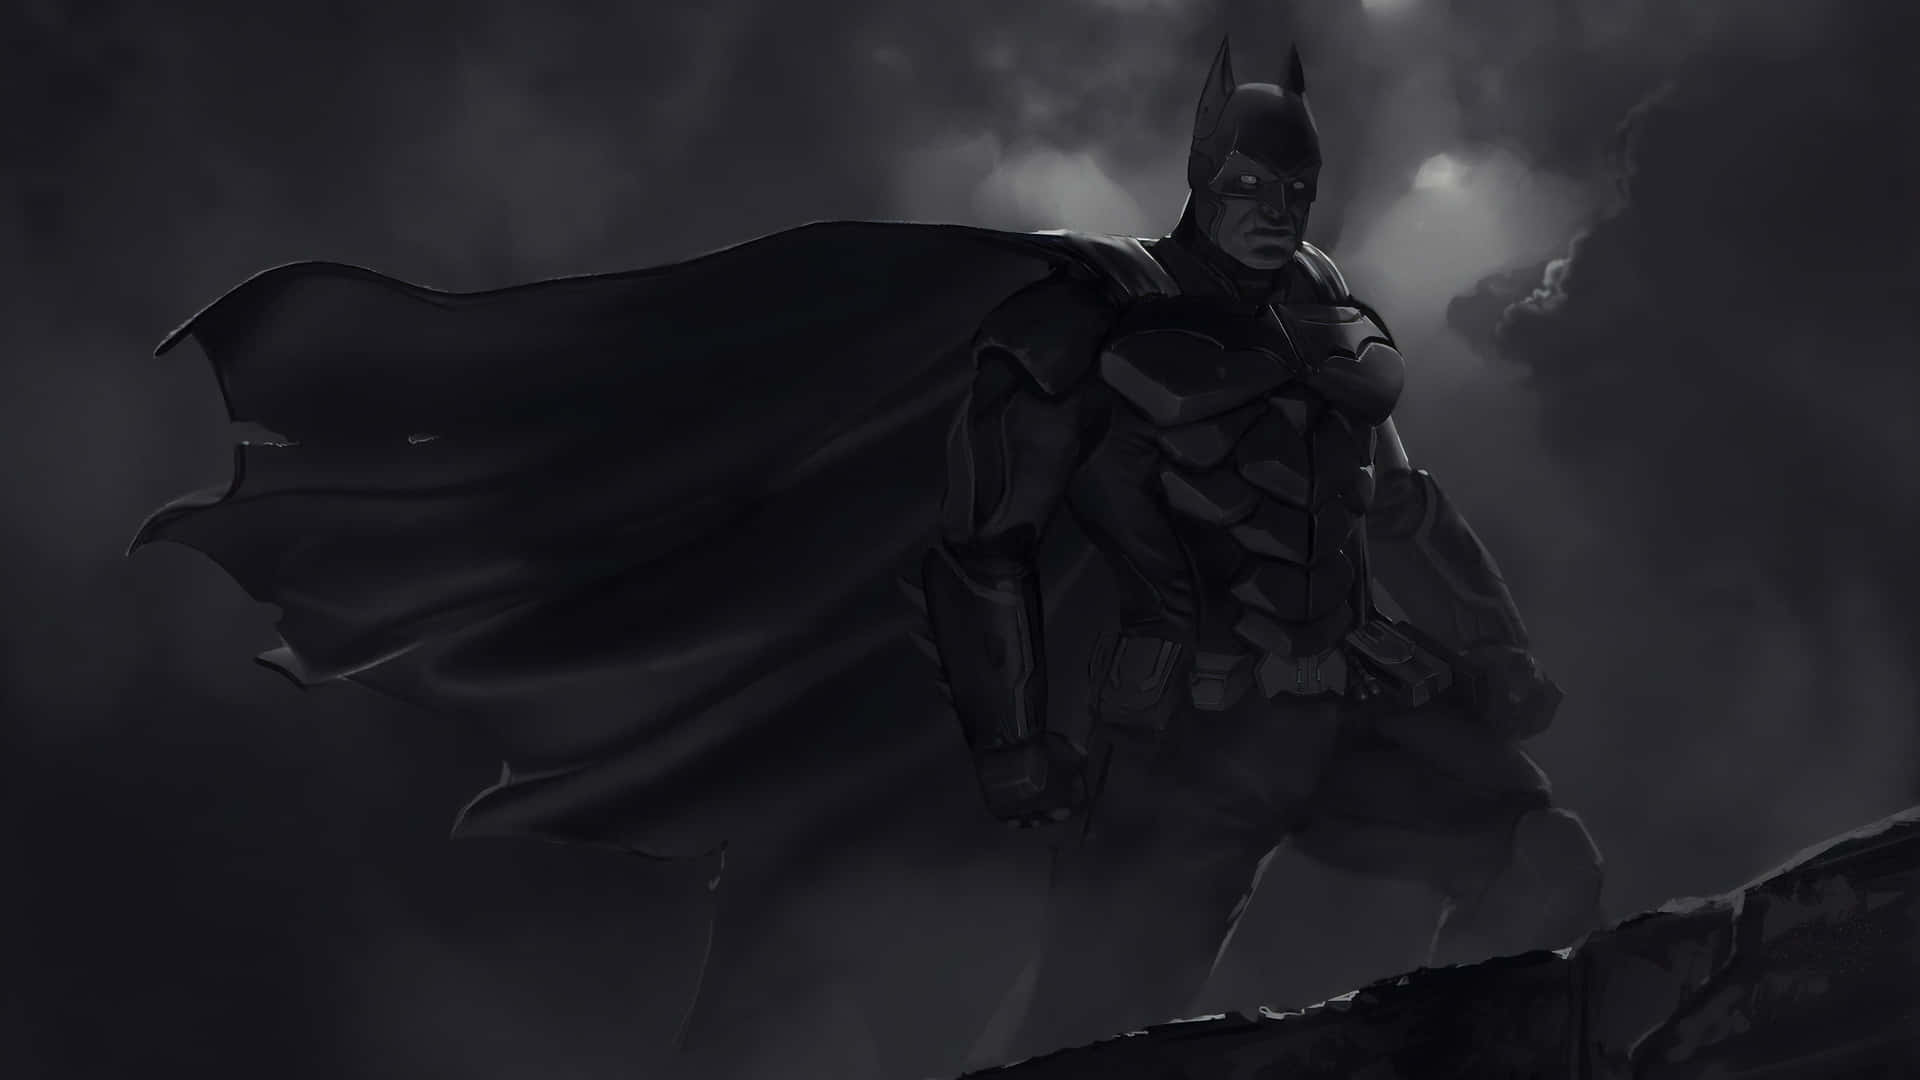 Íconodel Superhéroe Icónico Batman En Escala De Grises En El Fondo.